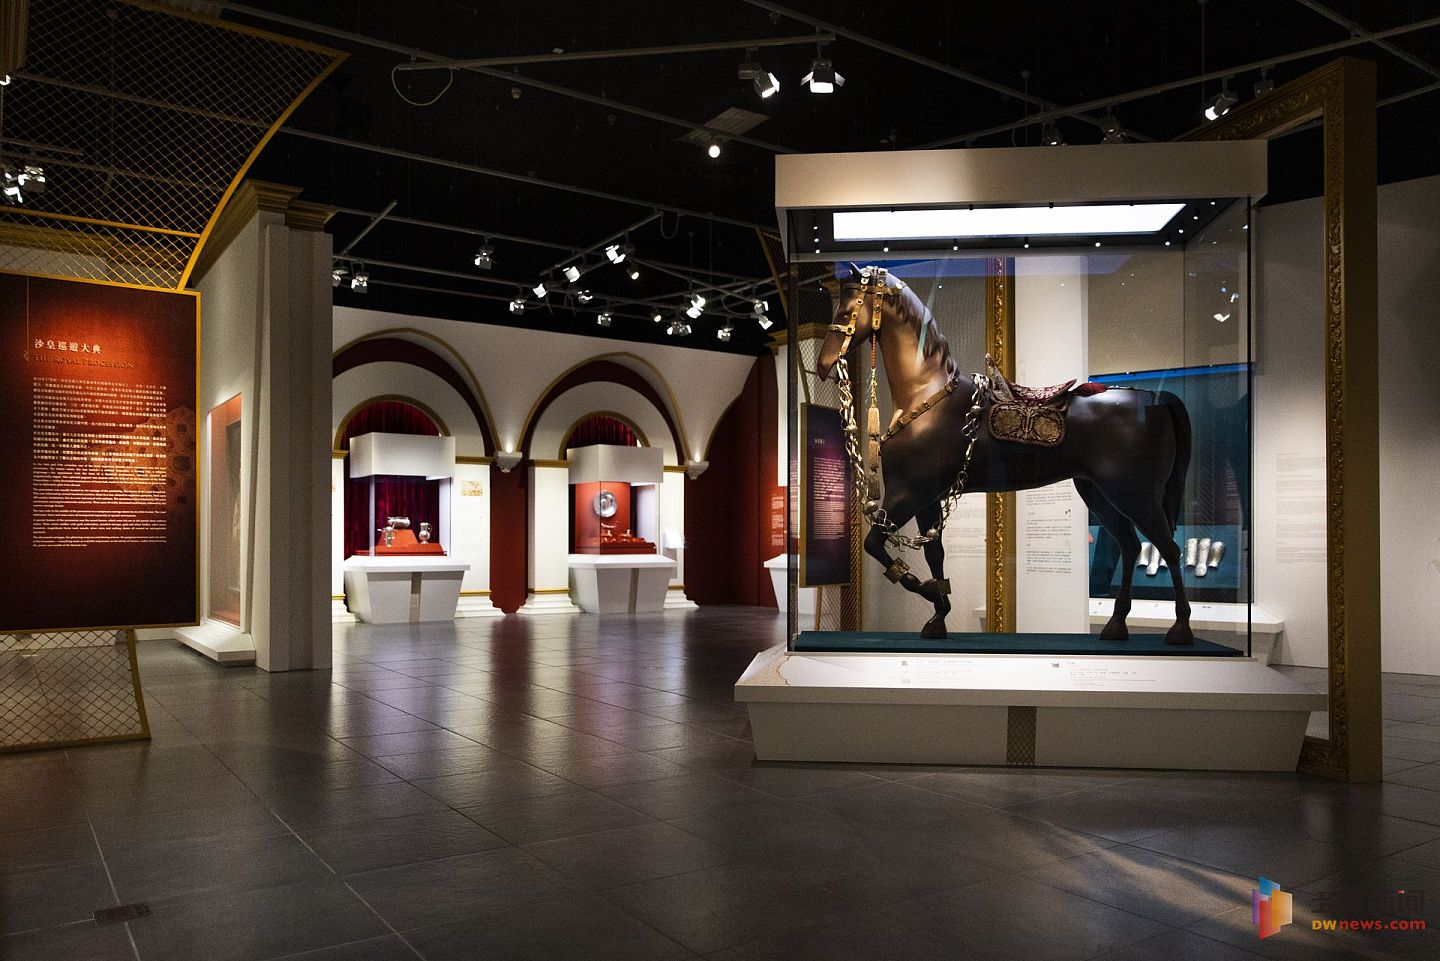 “圣耀皇权──俄罗斯皇家珍品展”5月29日起至8月底于沙田文化博物馆举行。(HK01)